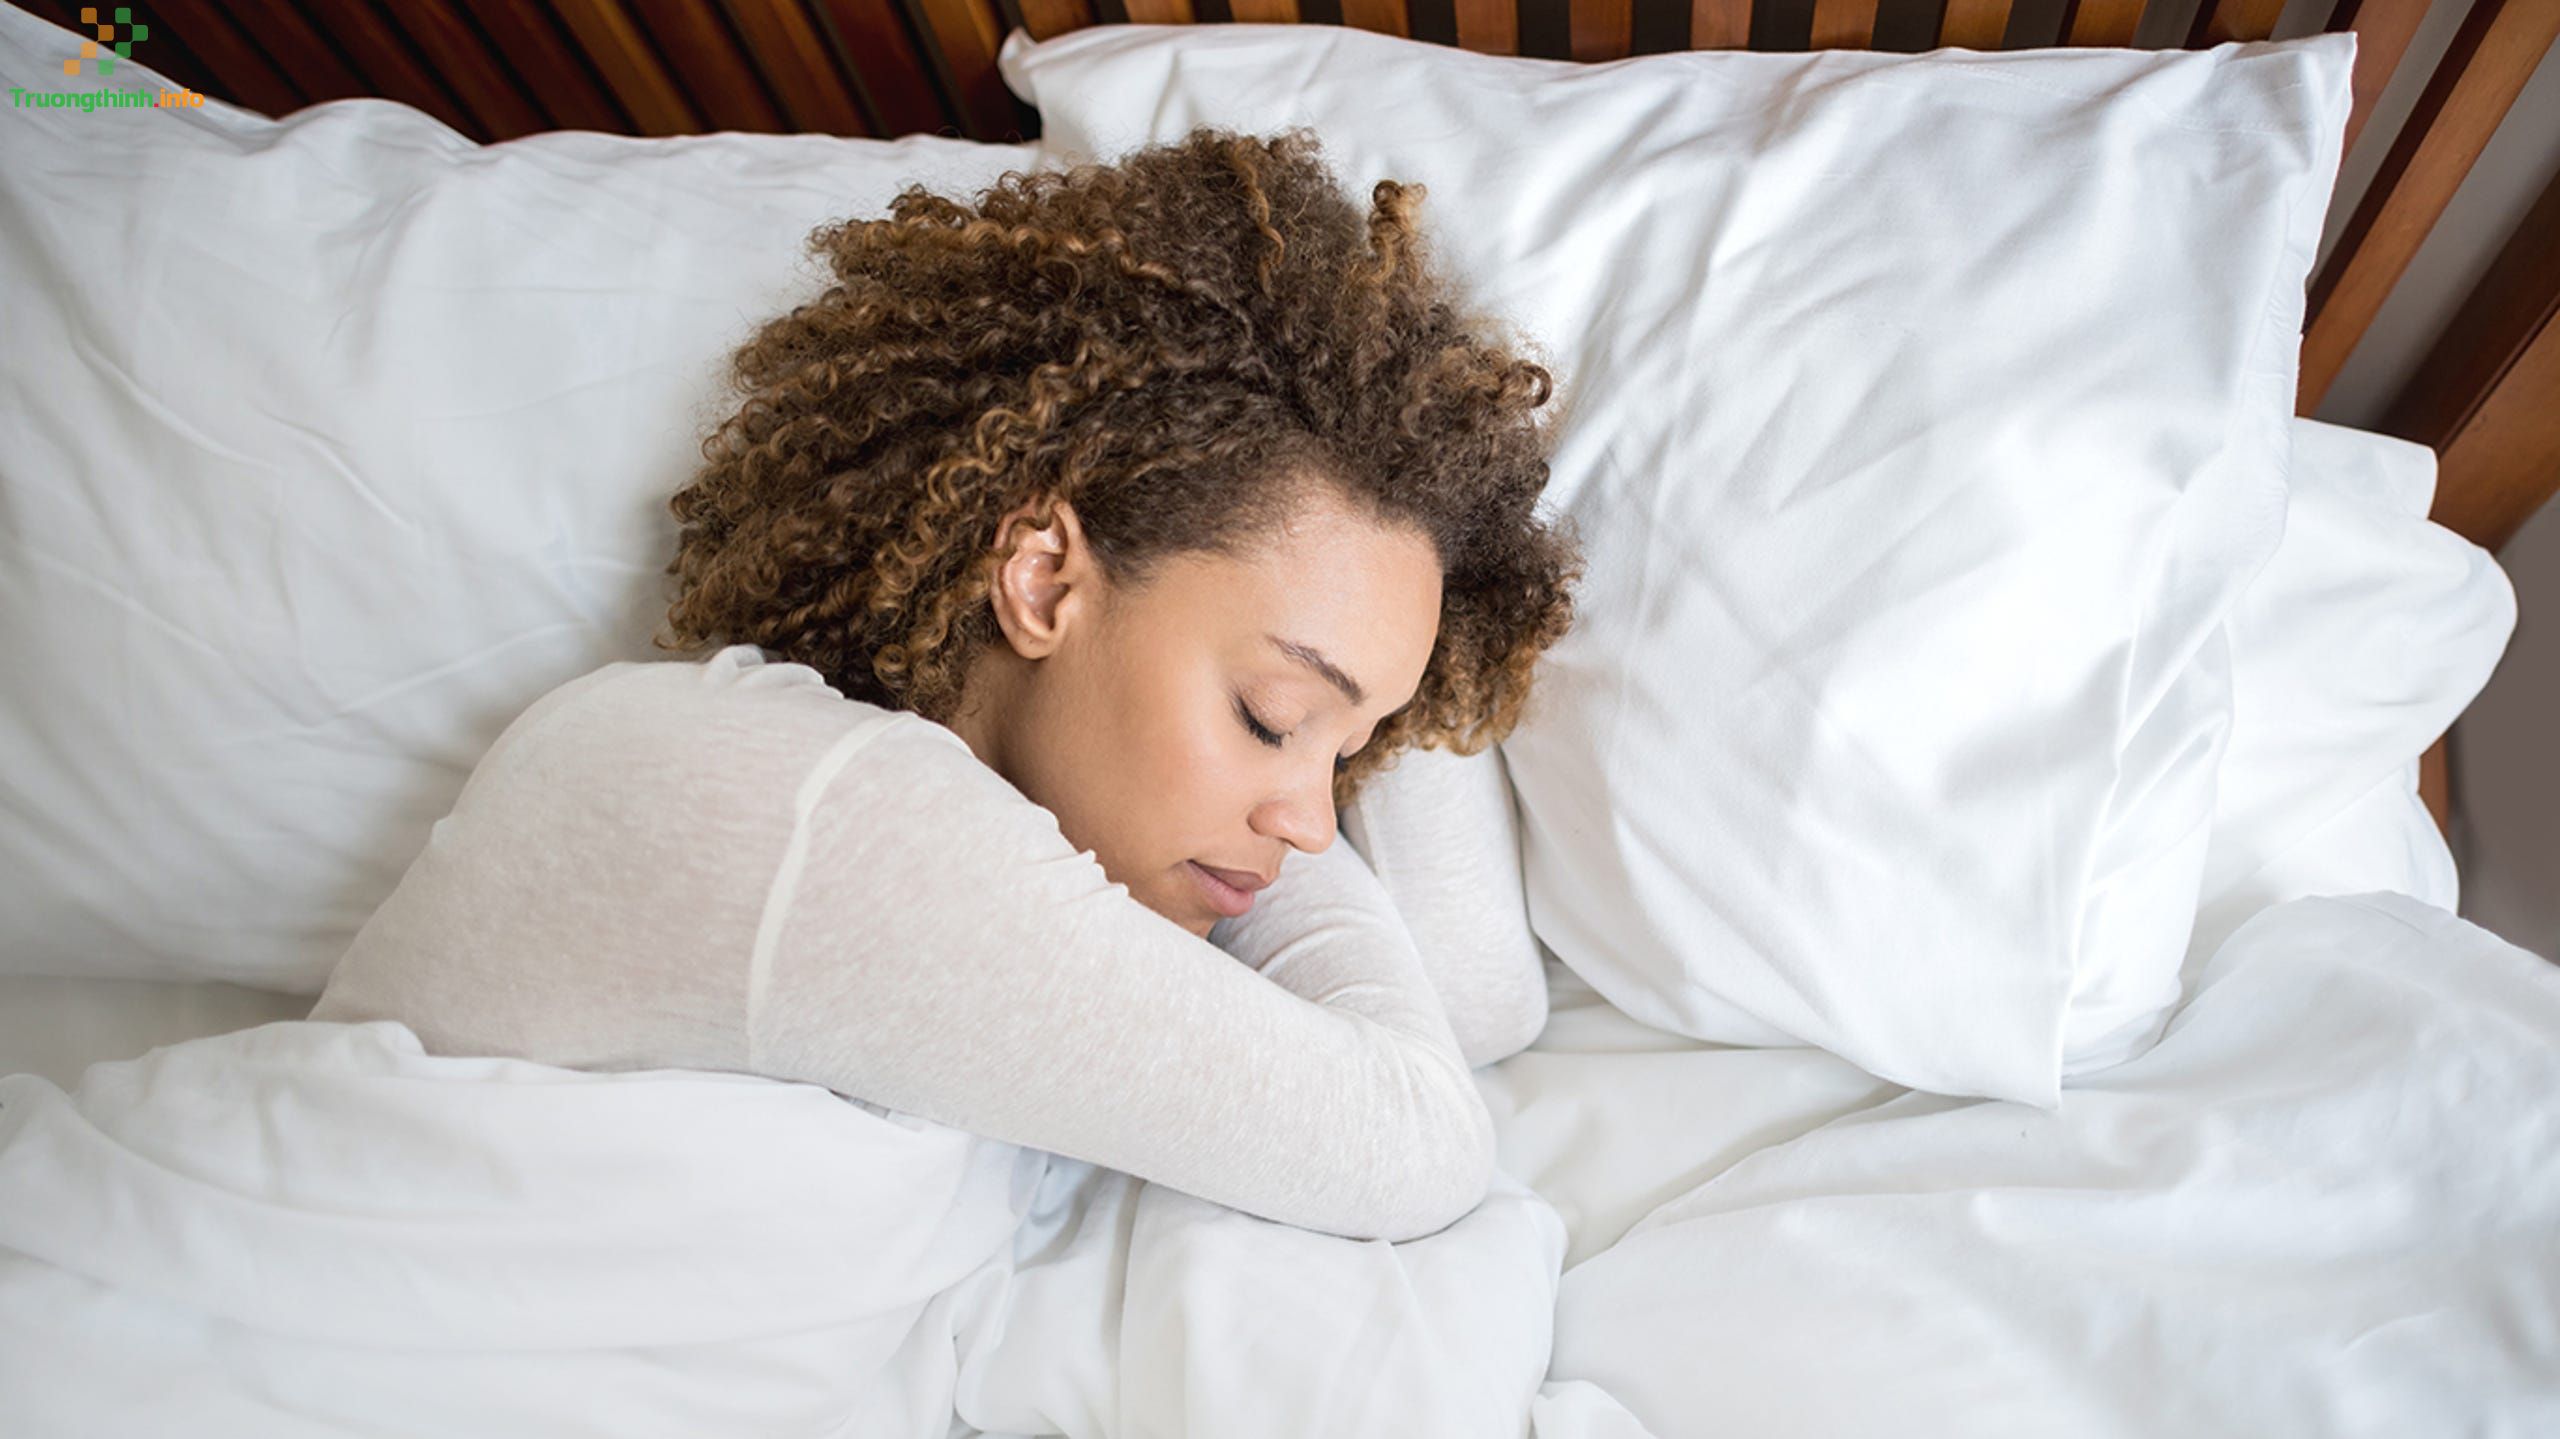 Tư thế ngủ nào đúng, tốt cho sức khỏe?